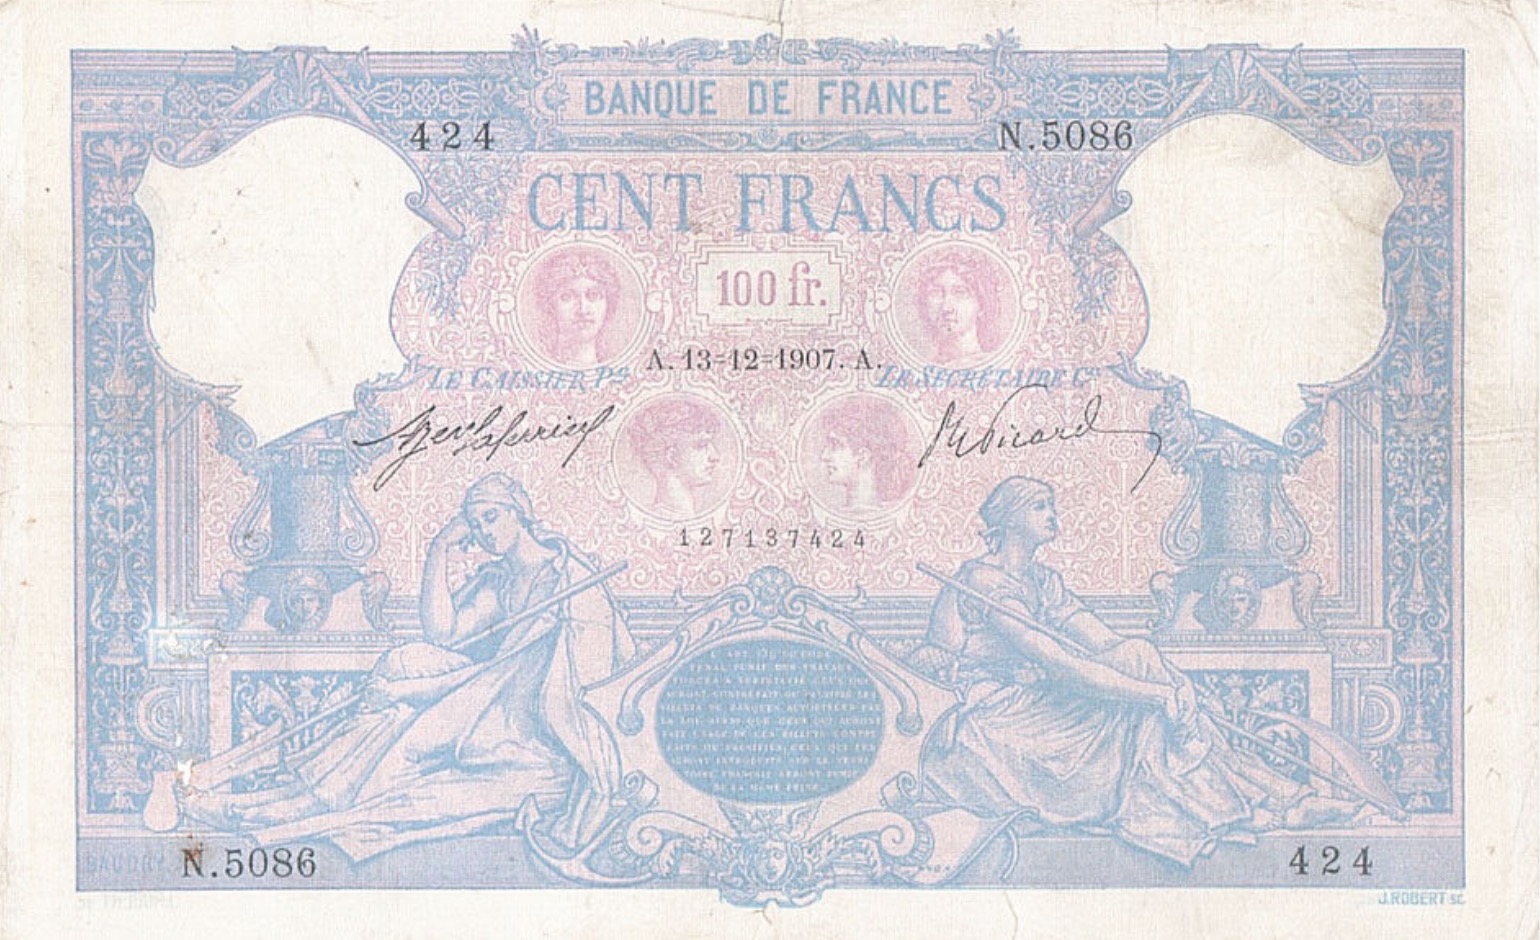 100 French Francs banknote (Bleu et Rose)